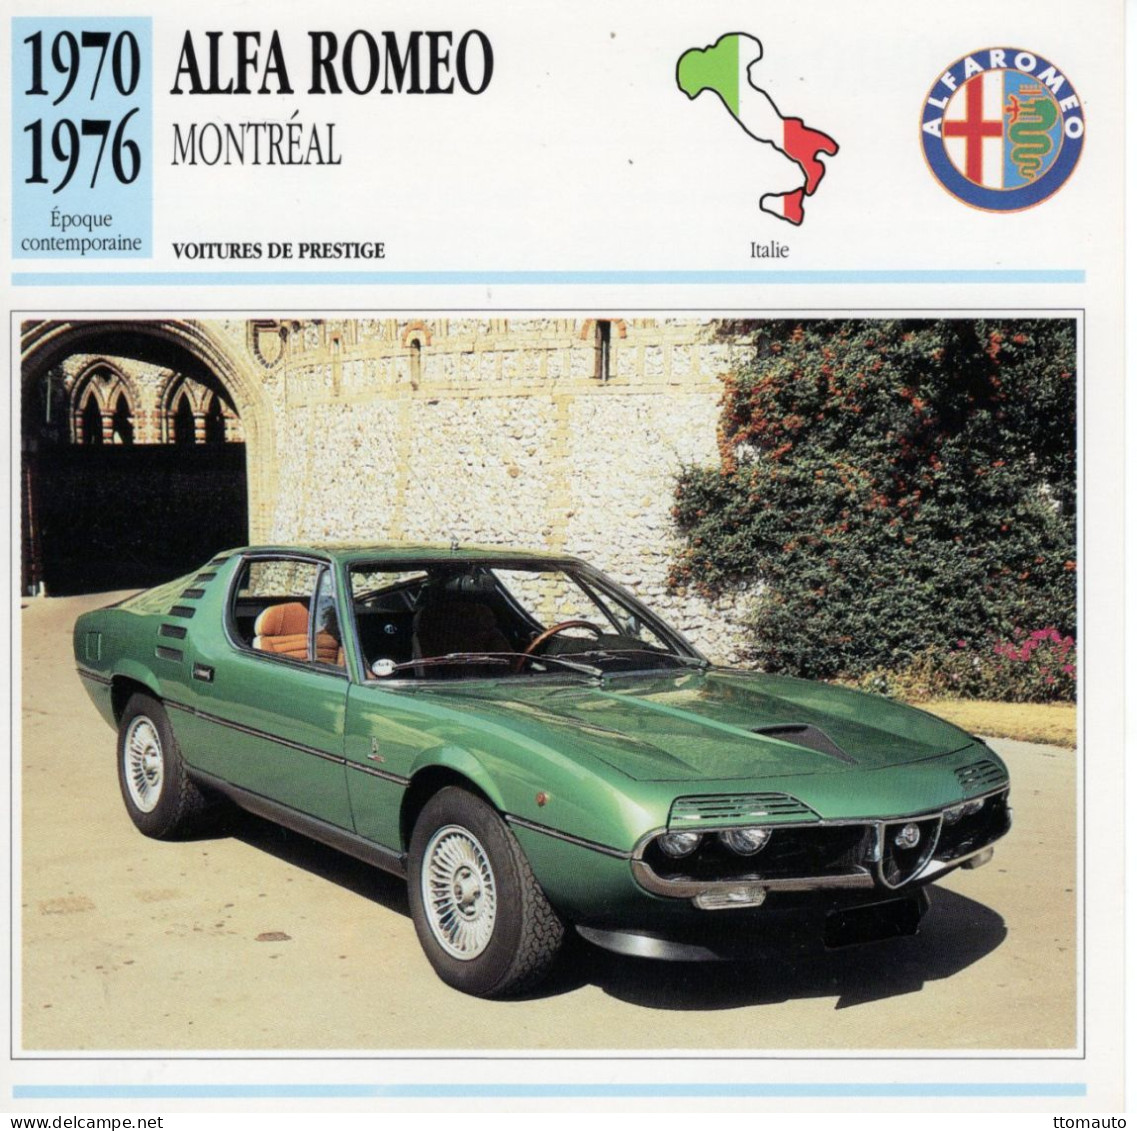 Alfa Romeo Montréal  -  1972  - Voiture De Prestige -  Fiche Technique Automobile (I) - Voitures